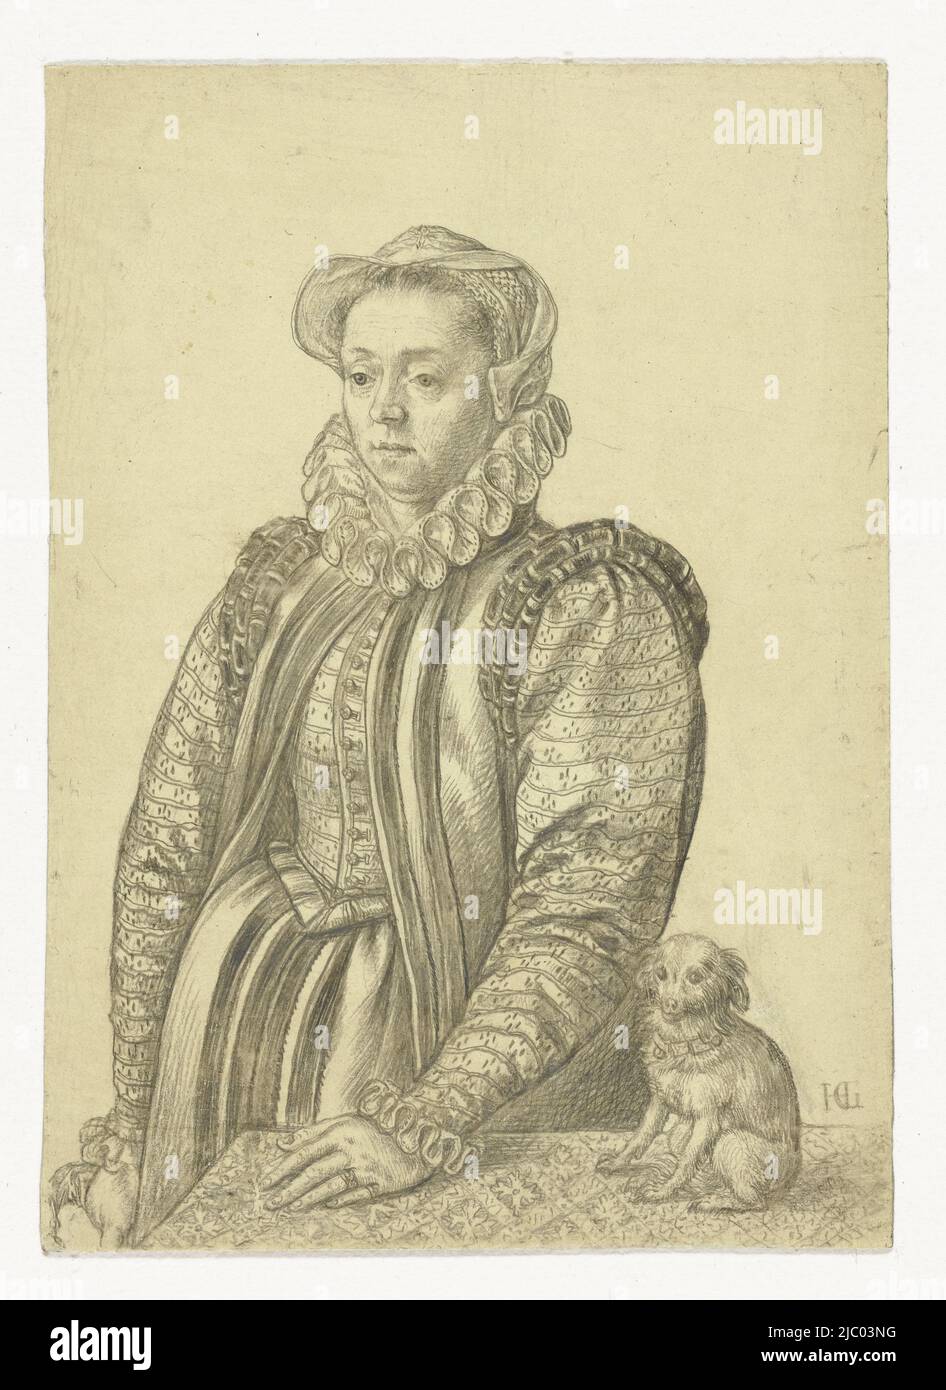 Porträt einer vornehmen Frau, Hendrick Goltzius, 1581 - 1591, in Halbsubstanz, stehend neben einem Tisch, auf dem ihre linke Hand ruht. Auf der rechten Seite des Tisches ein Lapdog. Die Dame trägt ein Kostüm mit bombastischen konstuzierten Ärmeln über einer bestickten Jacke, einem kleinen Hut auf dem Kopf, einem Stehkragen und Handschuhen in der rechten Hand., Zeichner: Hendrick Goltzius, 1581 - 1591, vorbereitetes Papier, H 88 mm × B 63 mm Stockfoto